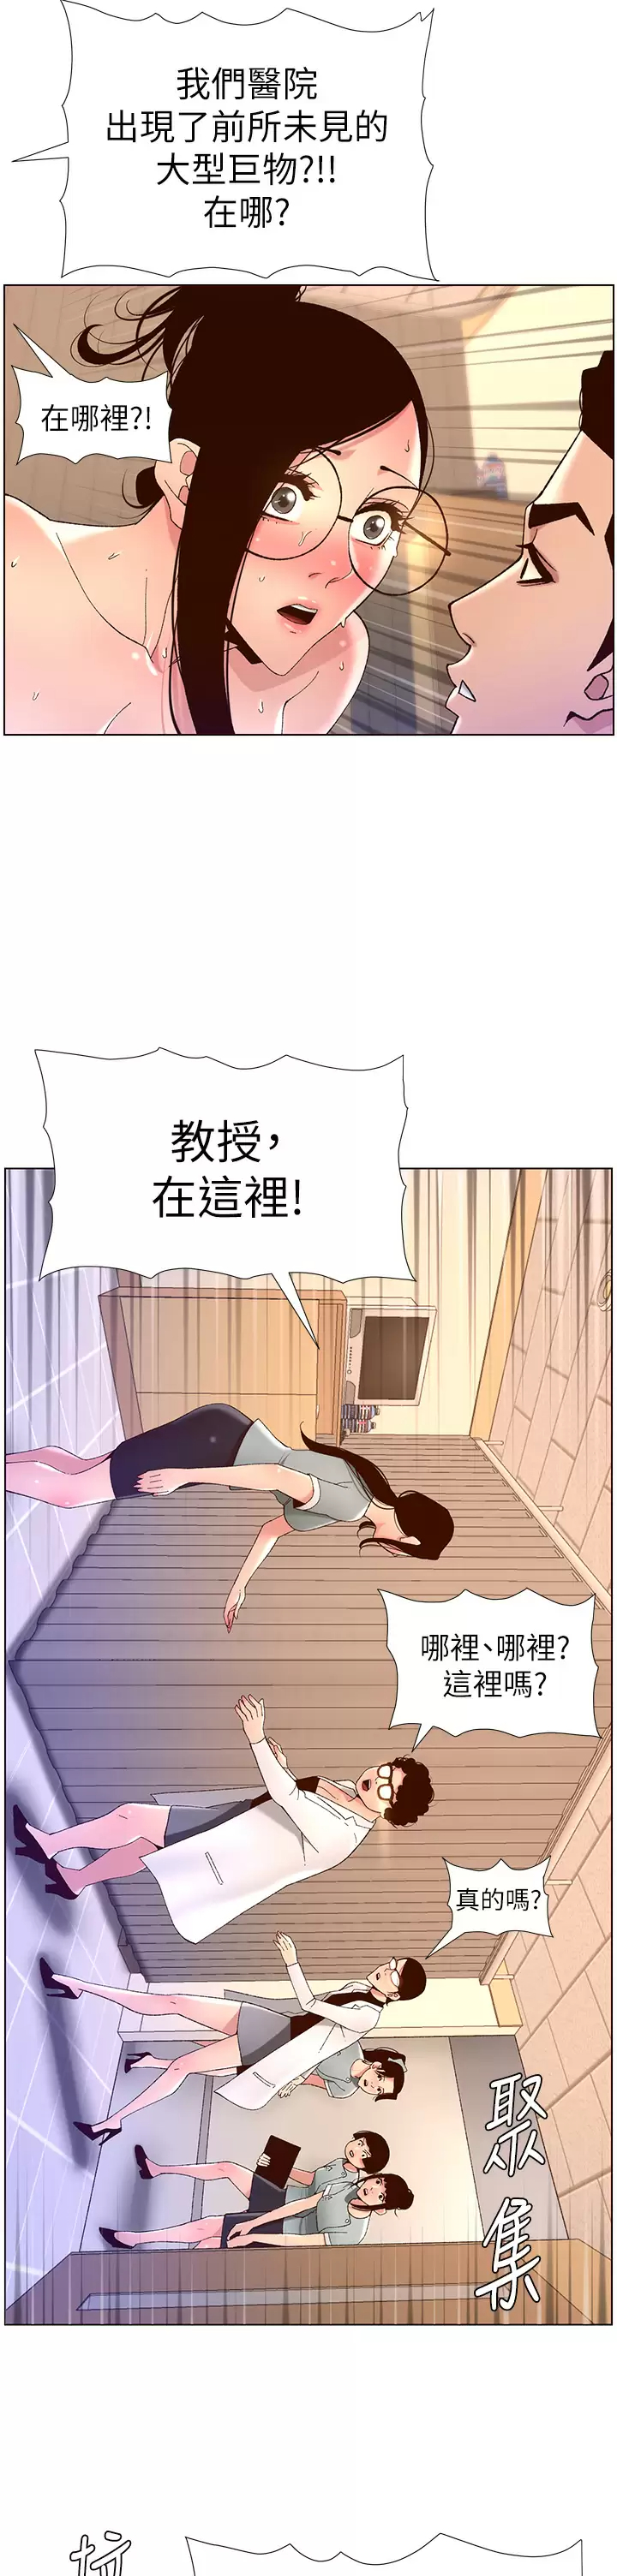 韩国污漫画 帝王App 第39话 生过三个小孩的巨穴 27